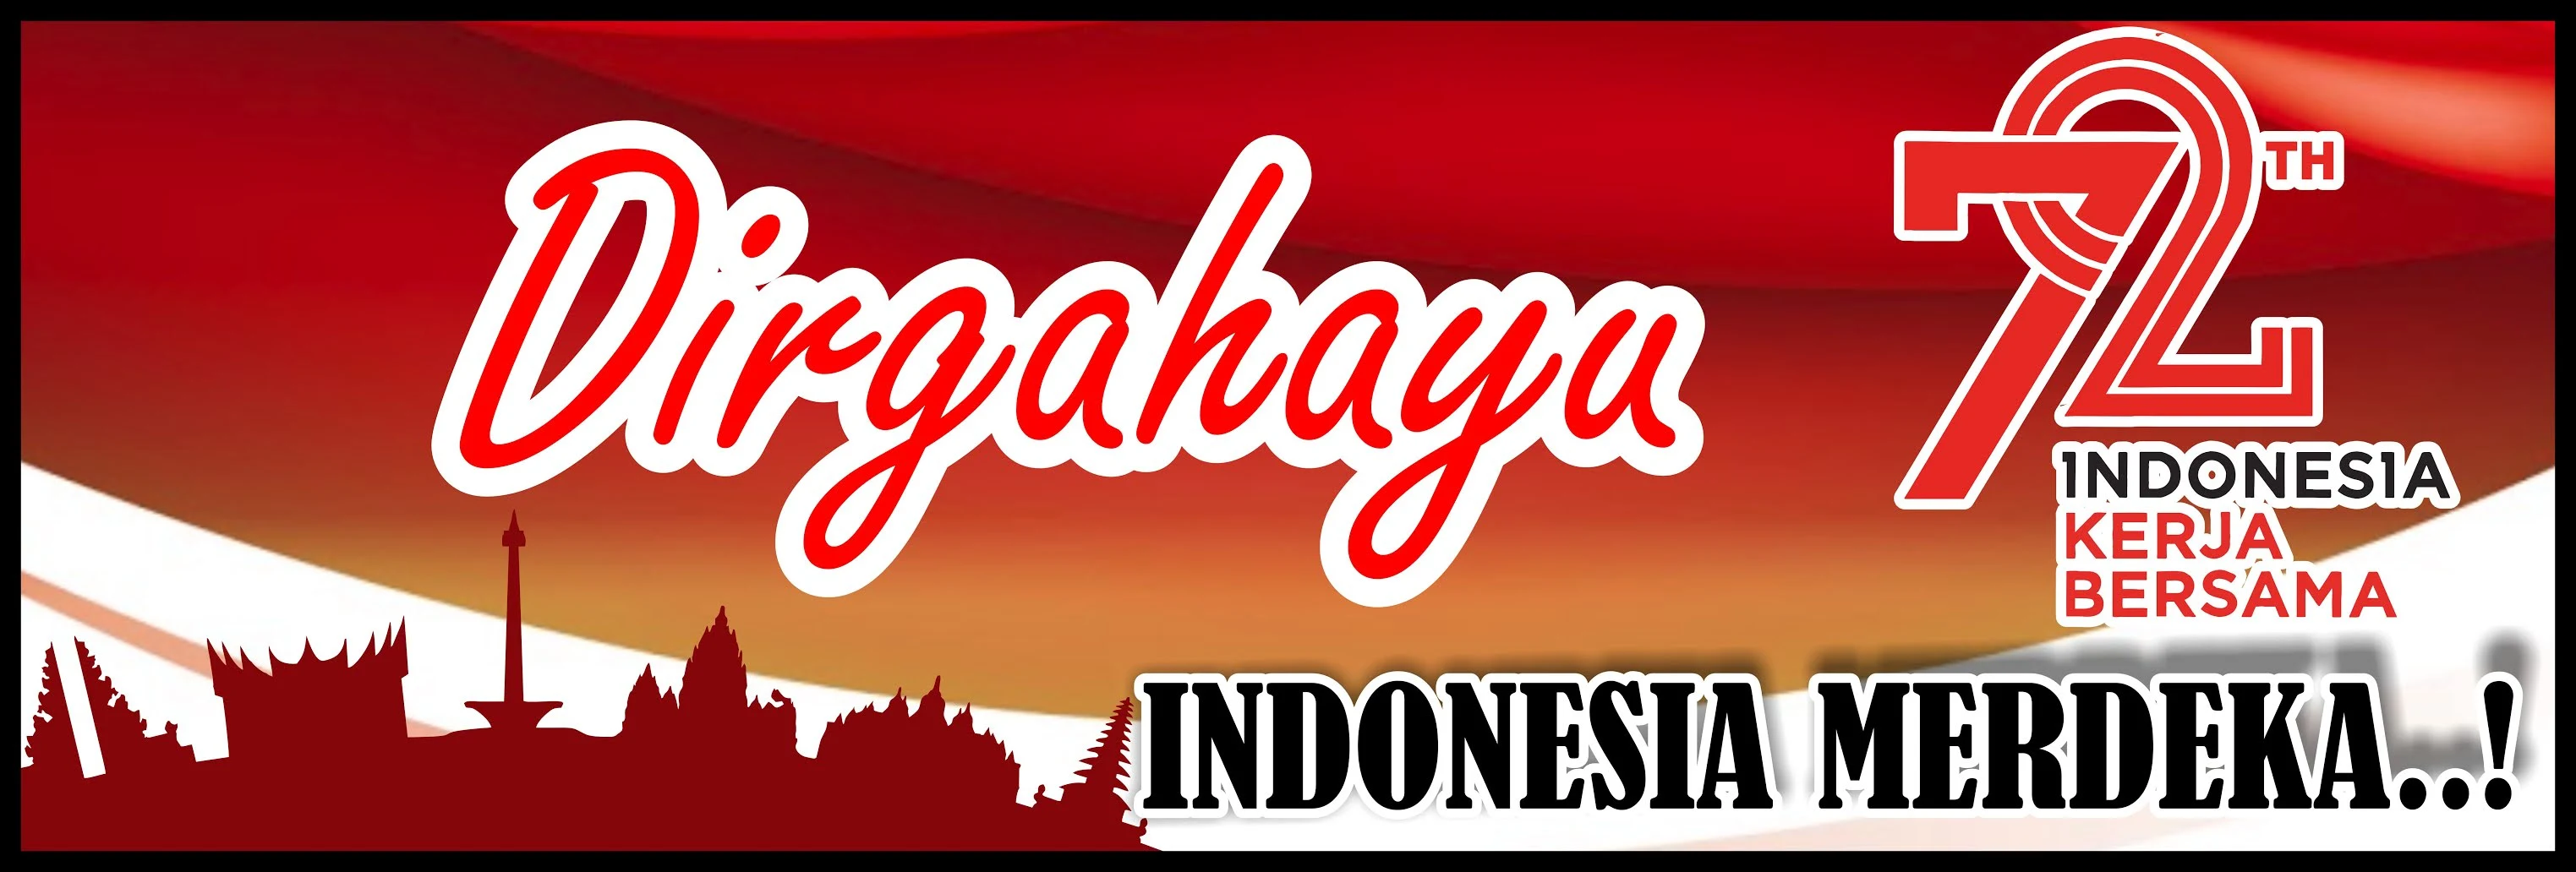 Banner 72TH Dirgahayu Indonesia Merdeka Kerja Bersama